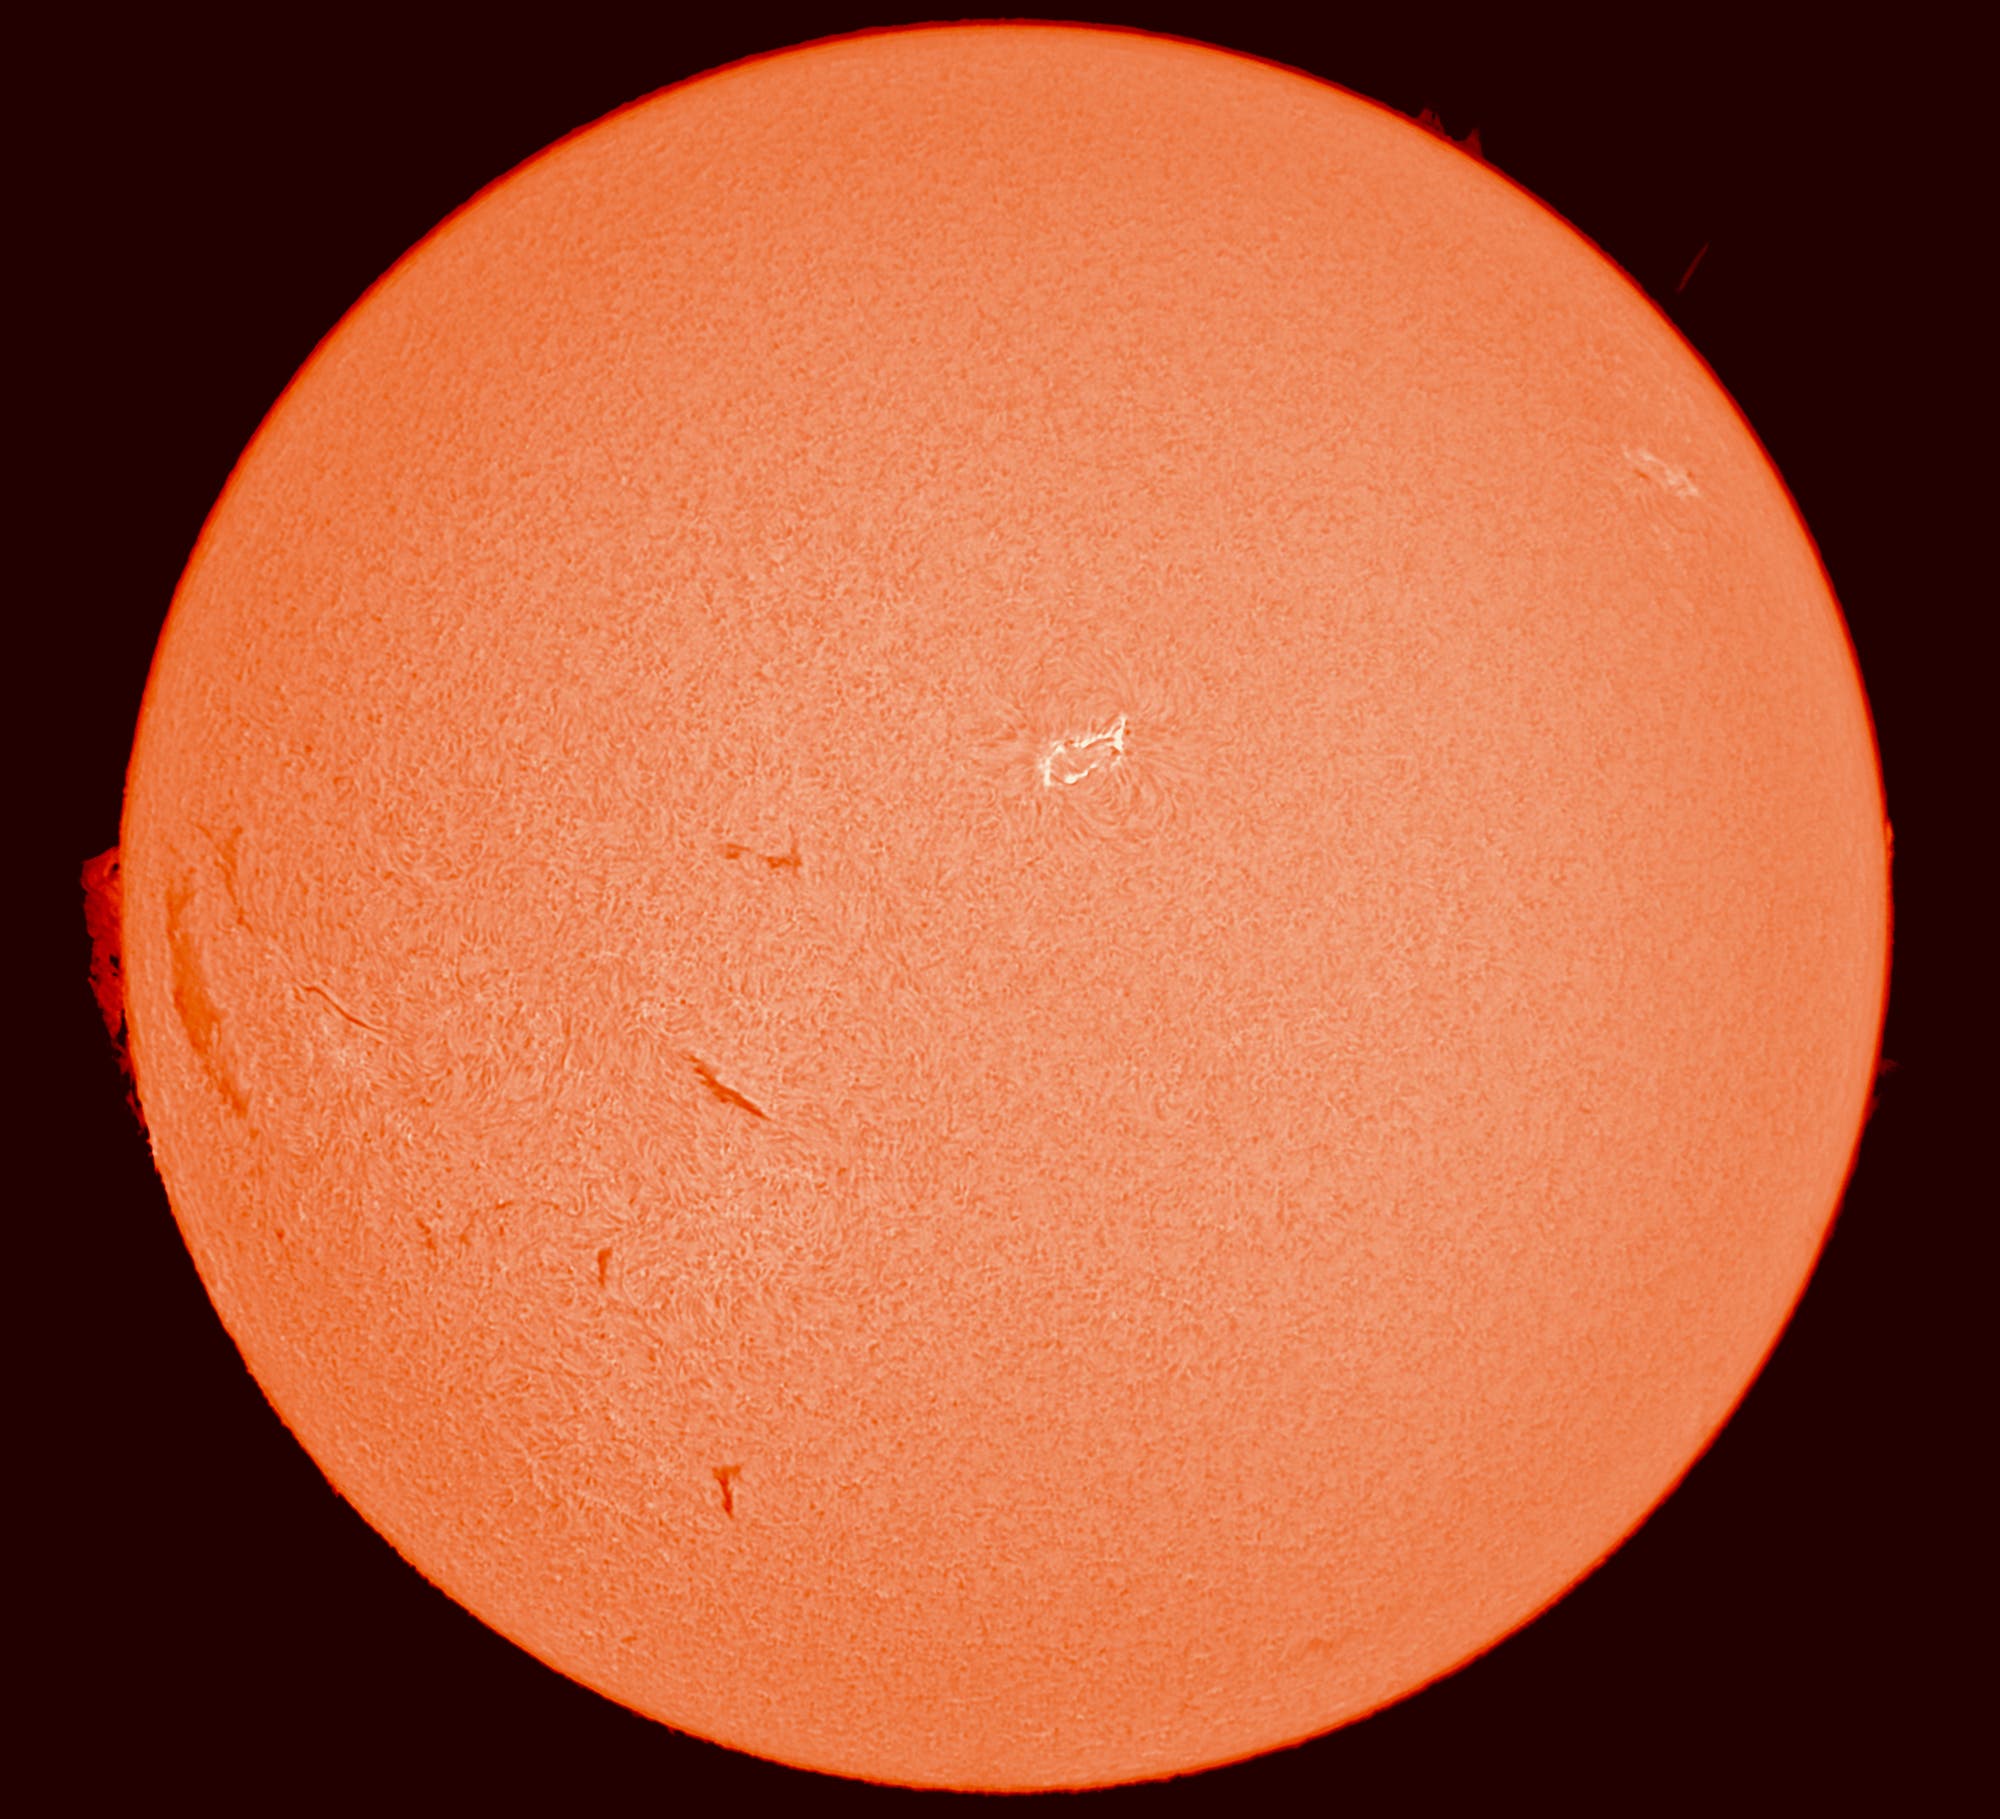 Die Sonne am 7. August 2016 einige Stunden vor einem Flare der Klasse M